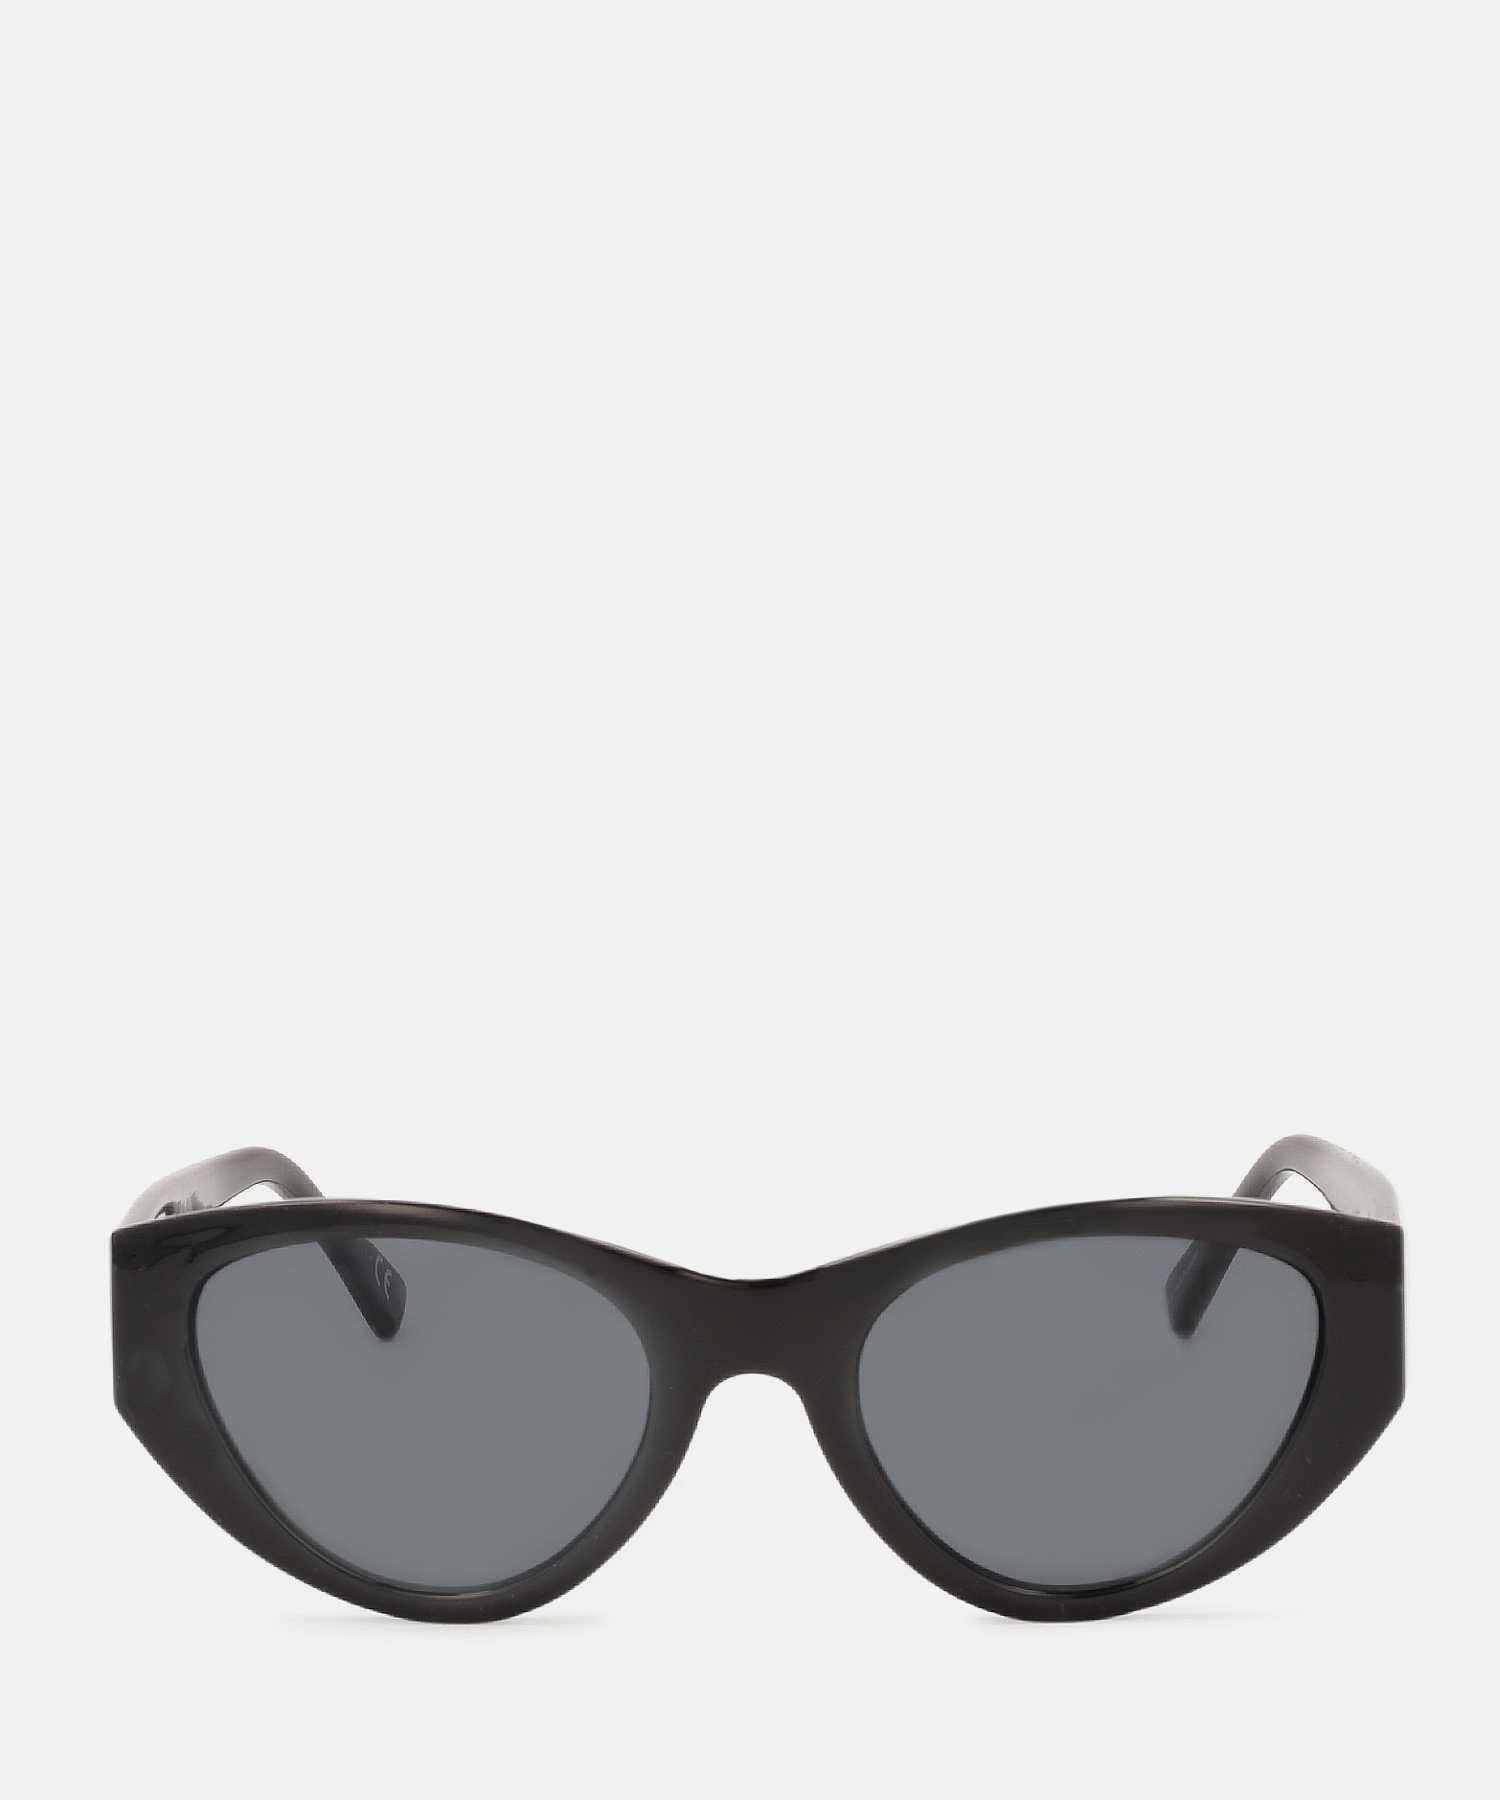 Modne czarne okulary przeciwsłoneczne Kazar